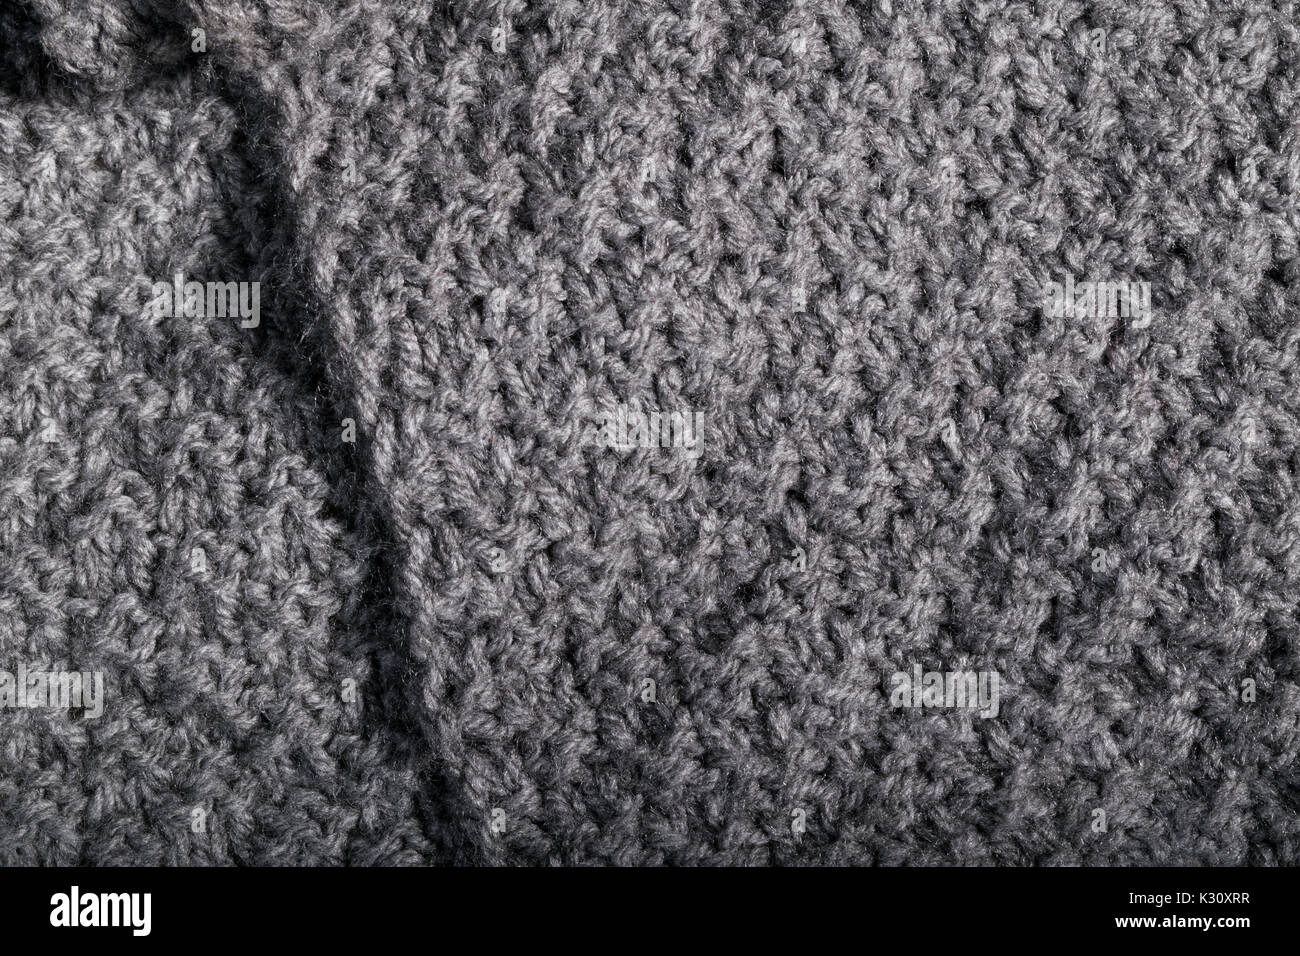 Handarbeit stricken Arbeiten in Details für Grey cashmere Wolle Stoff,  Textil Stockfotografie - Alamy